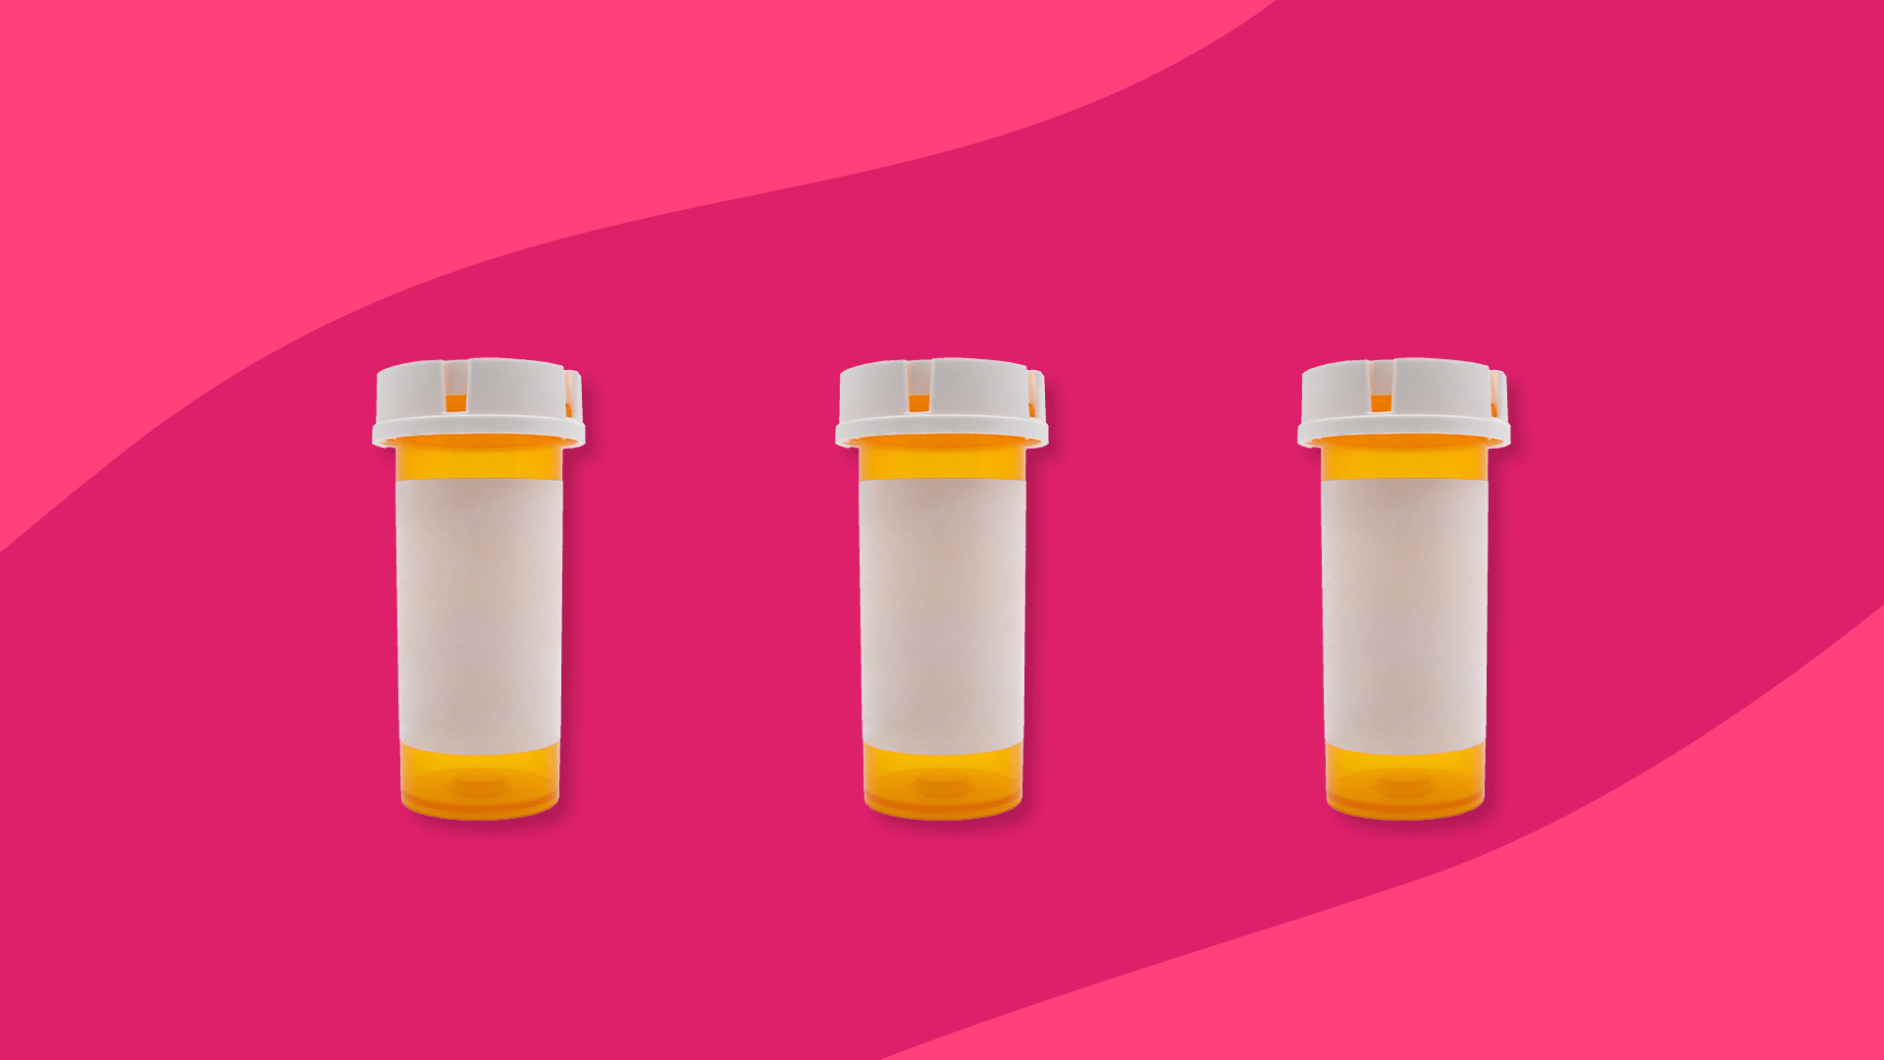 Rx pill bottles: Alternatives to amoxicillin